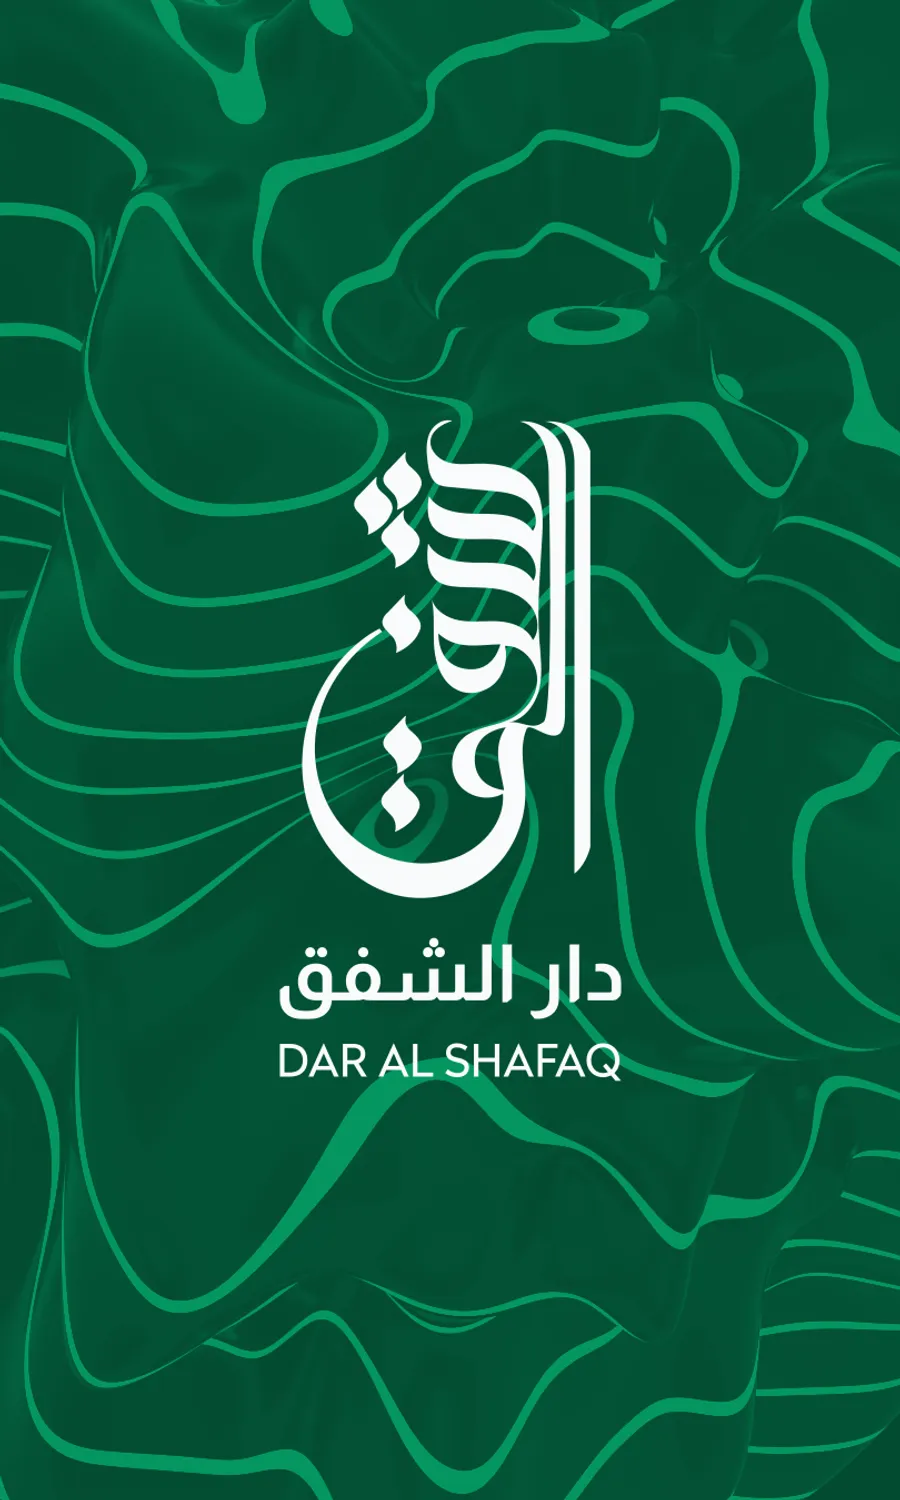 Dar Al Shafaq Project Thumbnail